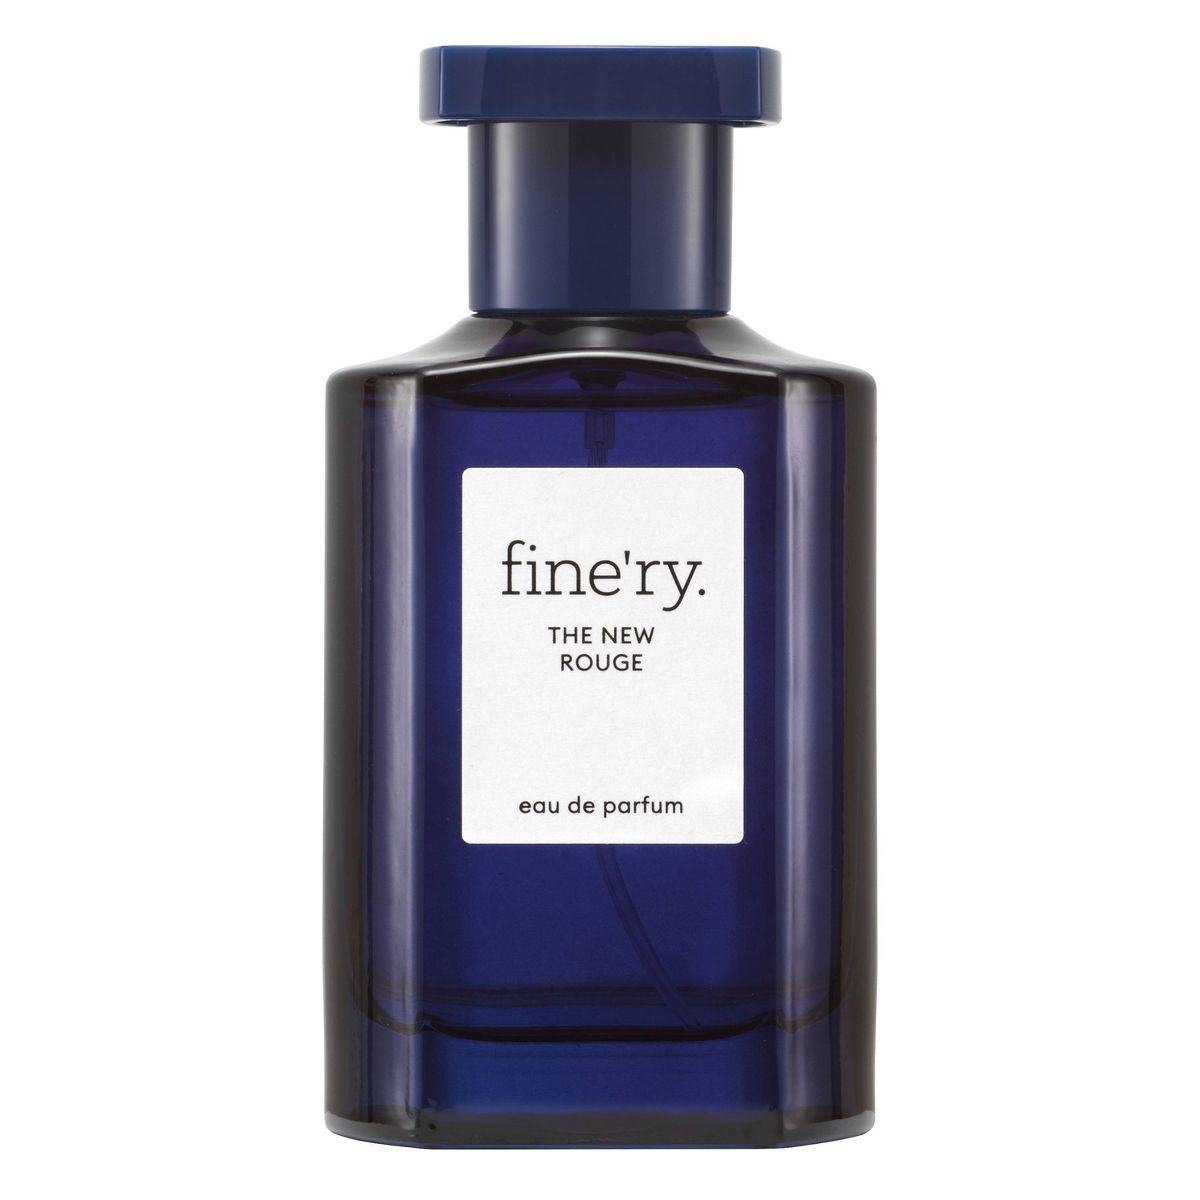 fine'ry. Women's Eau de Parfum Perfume - The New Rouge - 2 fl oz | Target